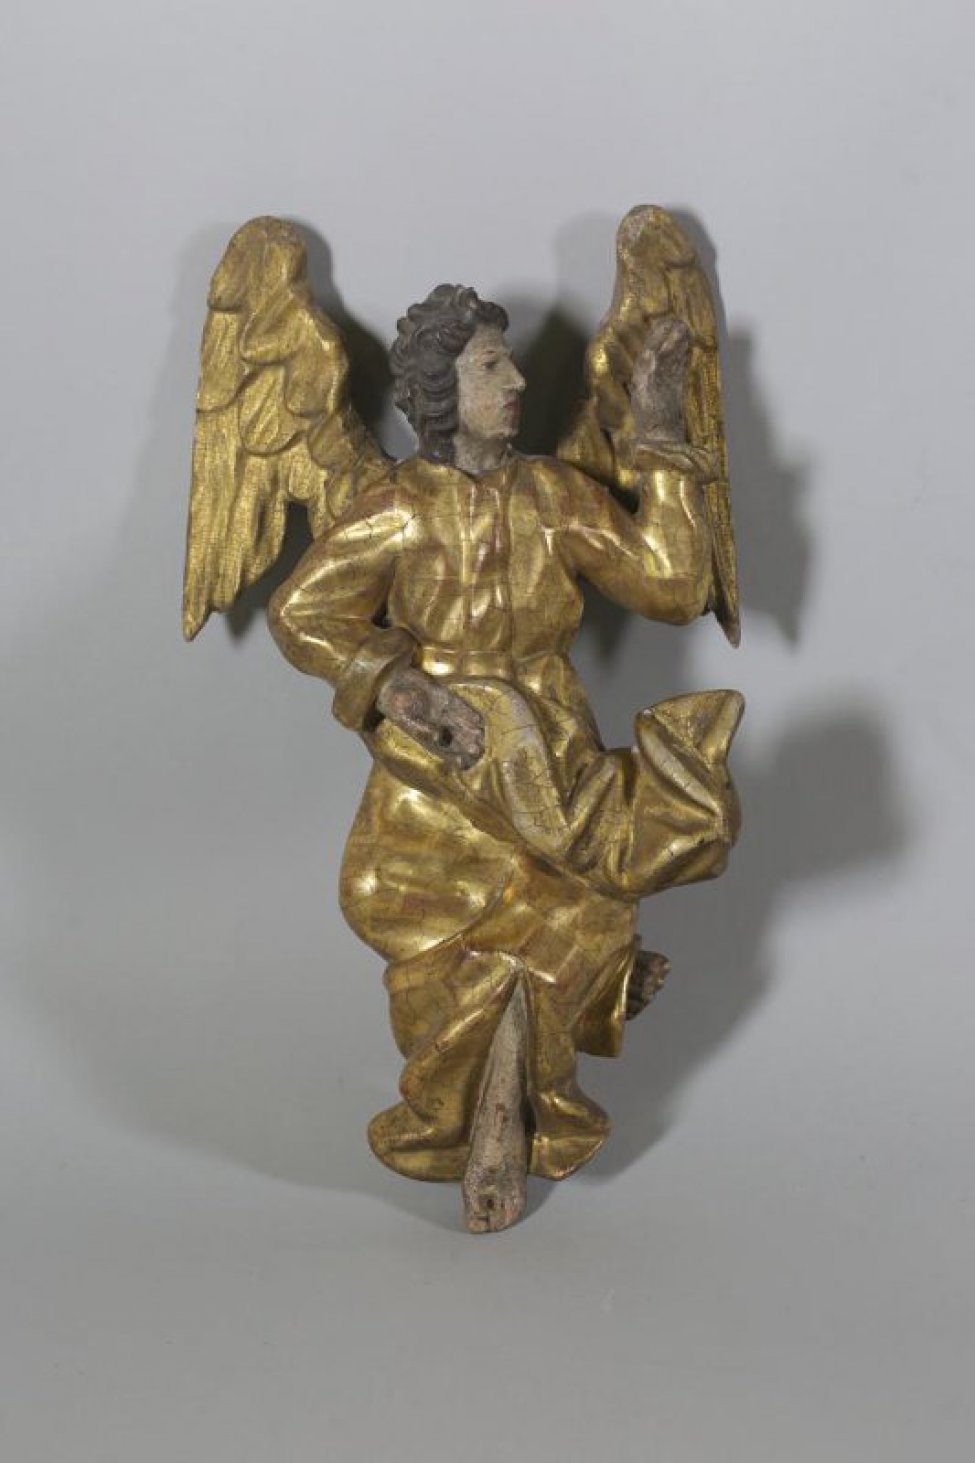 Ангел изображен в зеркальной симметрии к парному ангелу (ДС-361), в рост, с поднятой, согнутой в локте левой рукой, согнутыми и скрещенными ногами. Голова повернута влево. Торс изображен анфас. Крылья расправлены за спиной. Лик овальный, с покатым лбом, крупным коротким носом и широкой нижней челюстью. Длинные волнистые волосы зачесаны назад. Облачение - длинный препоясанный хитон с разрезом. Свободный конец плаща загнут вверх. Складки объемные "с изломом".